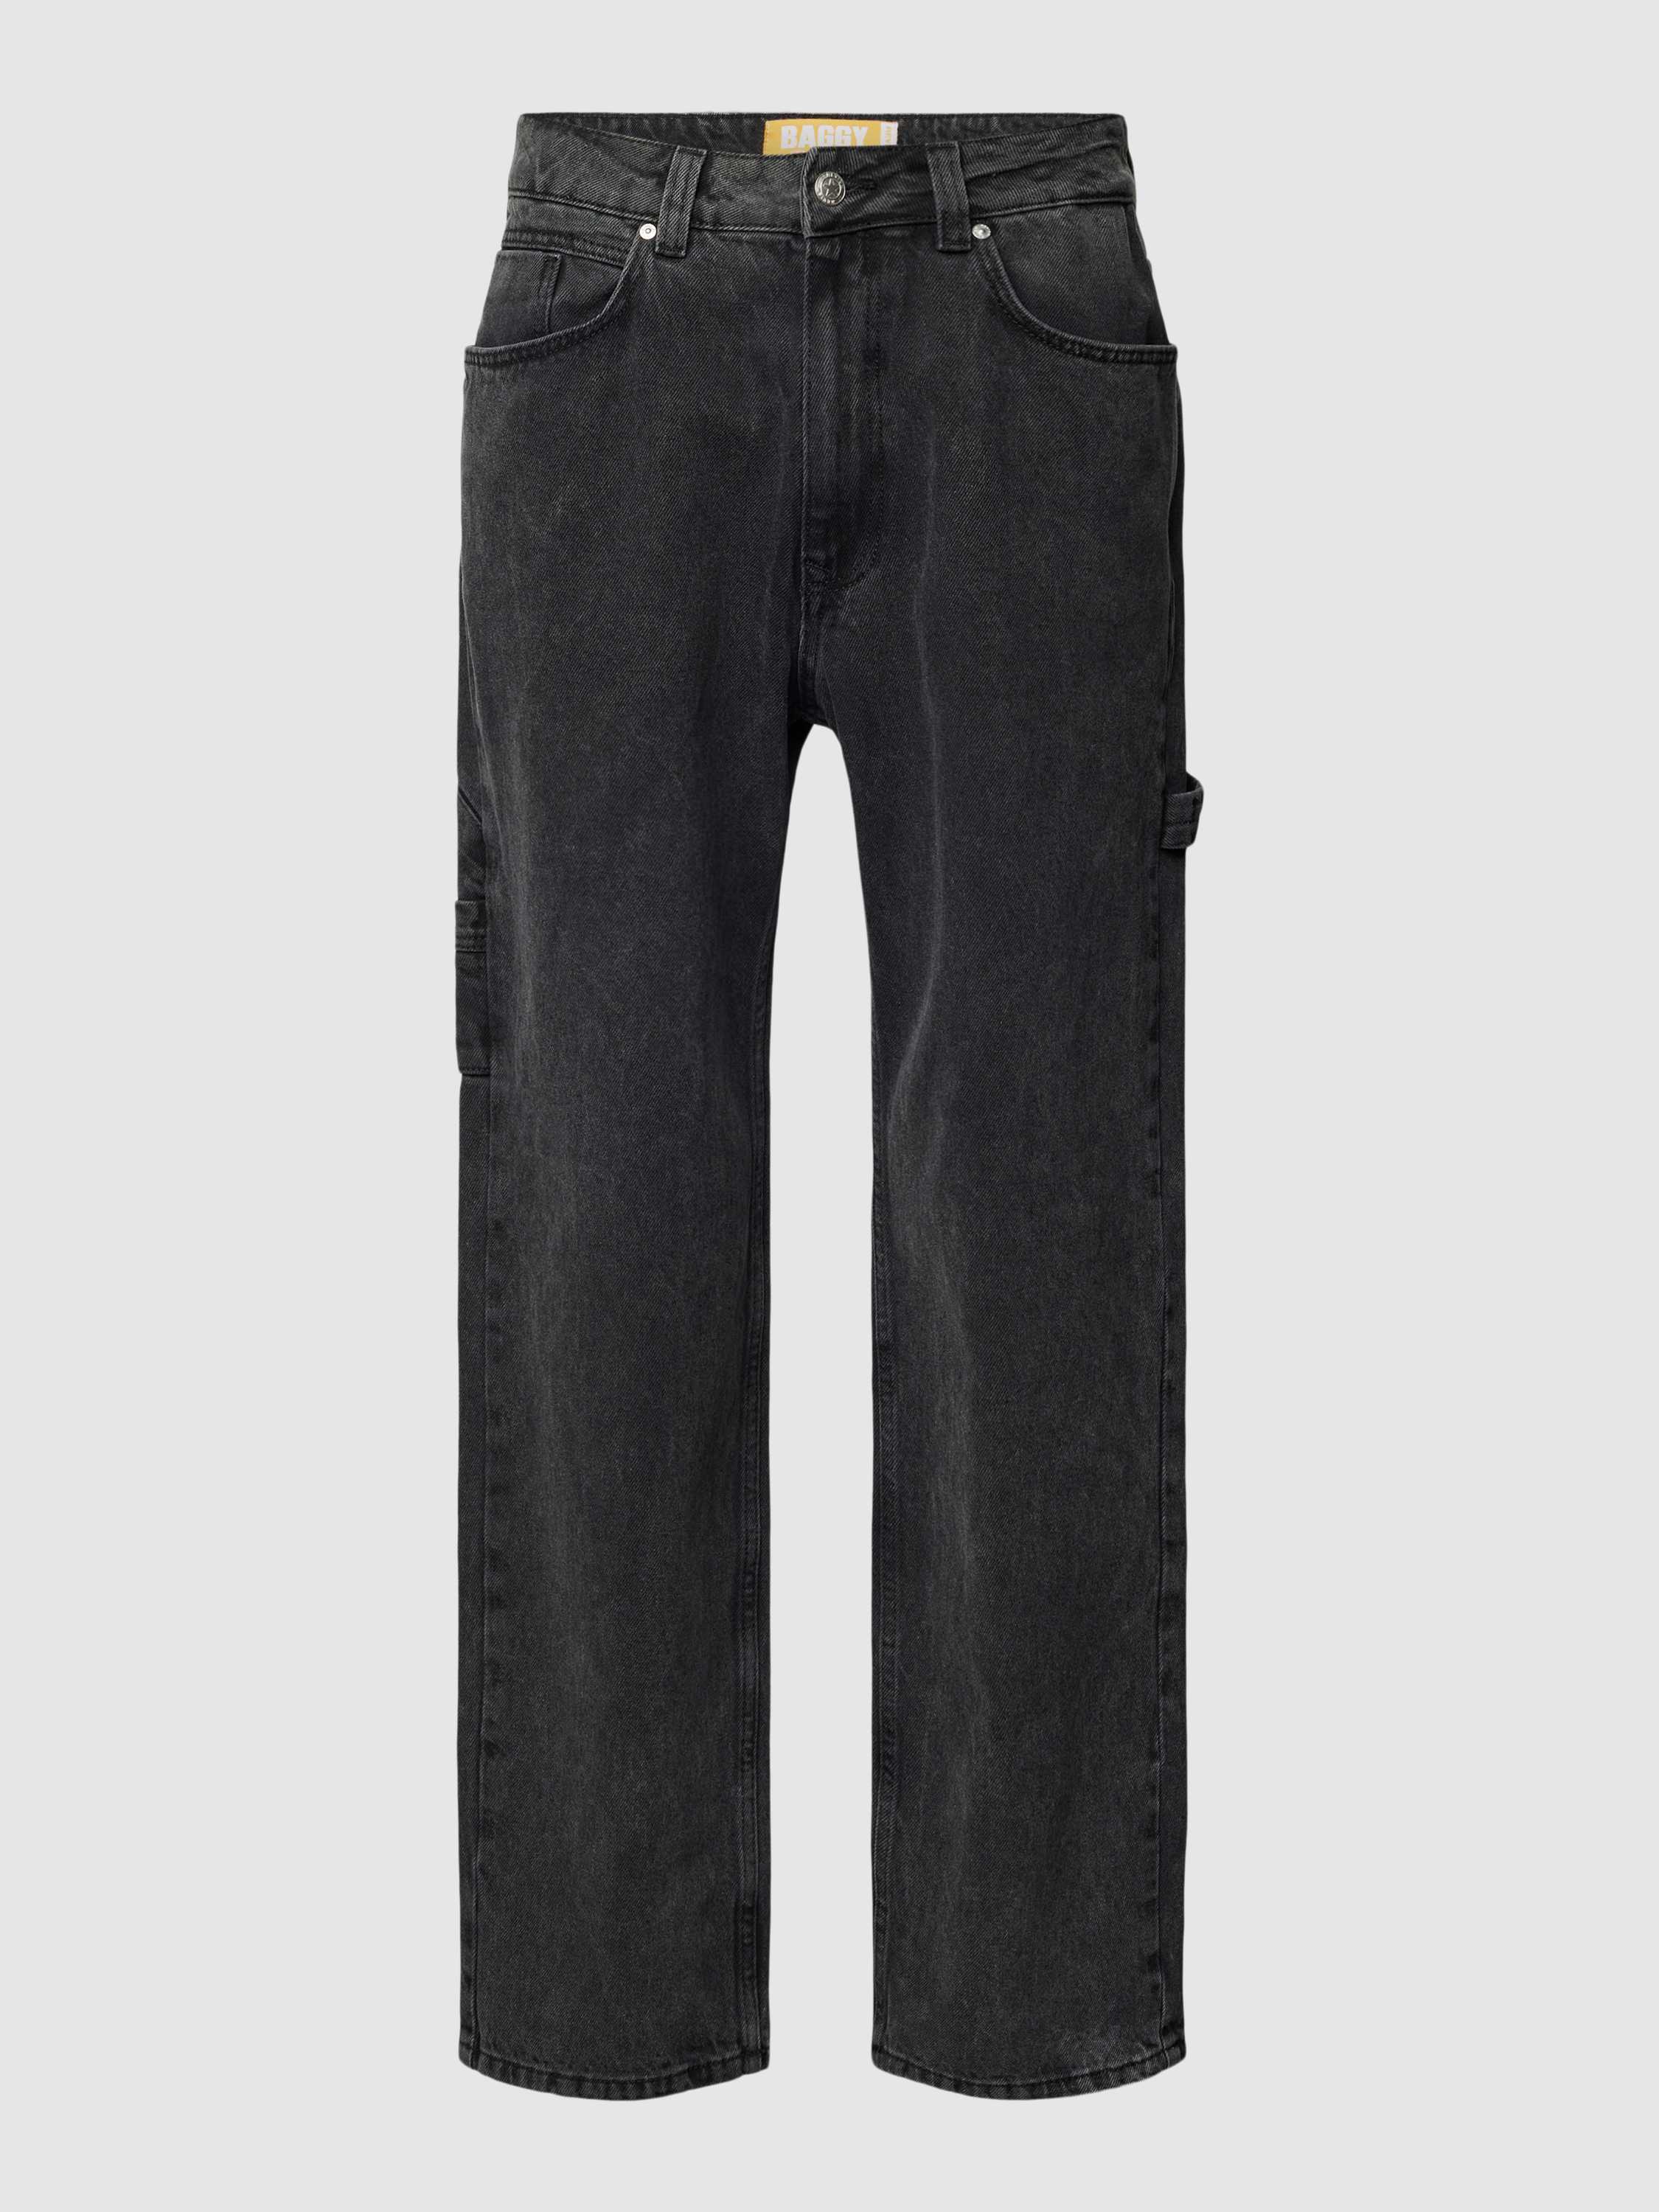 Baggy Fit Jeans im 5-Pocket-Design in schwarz